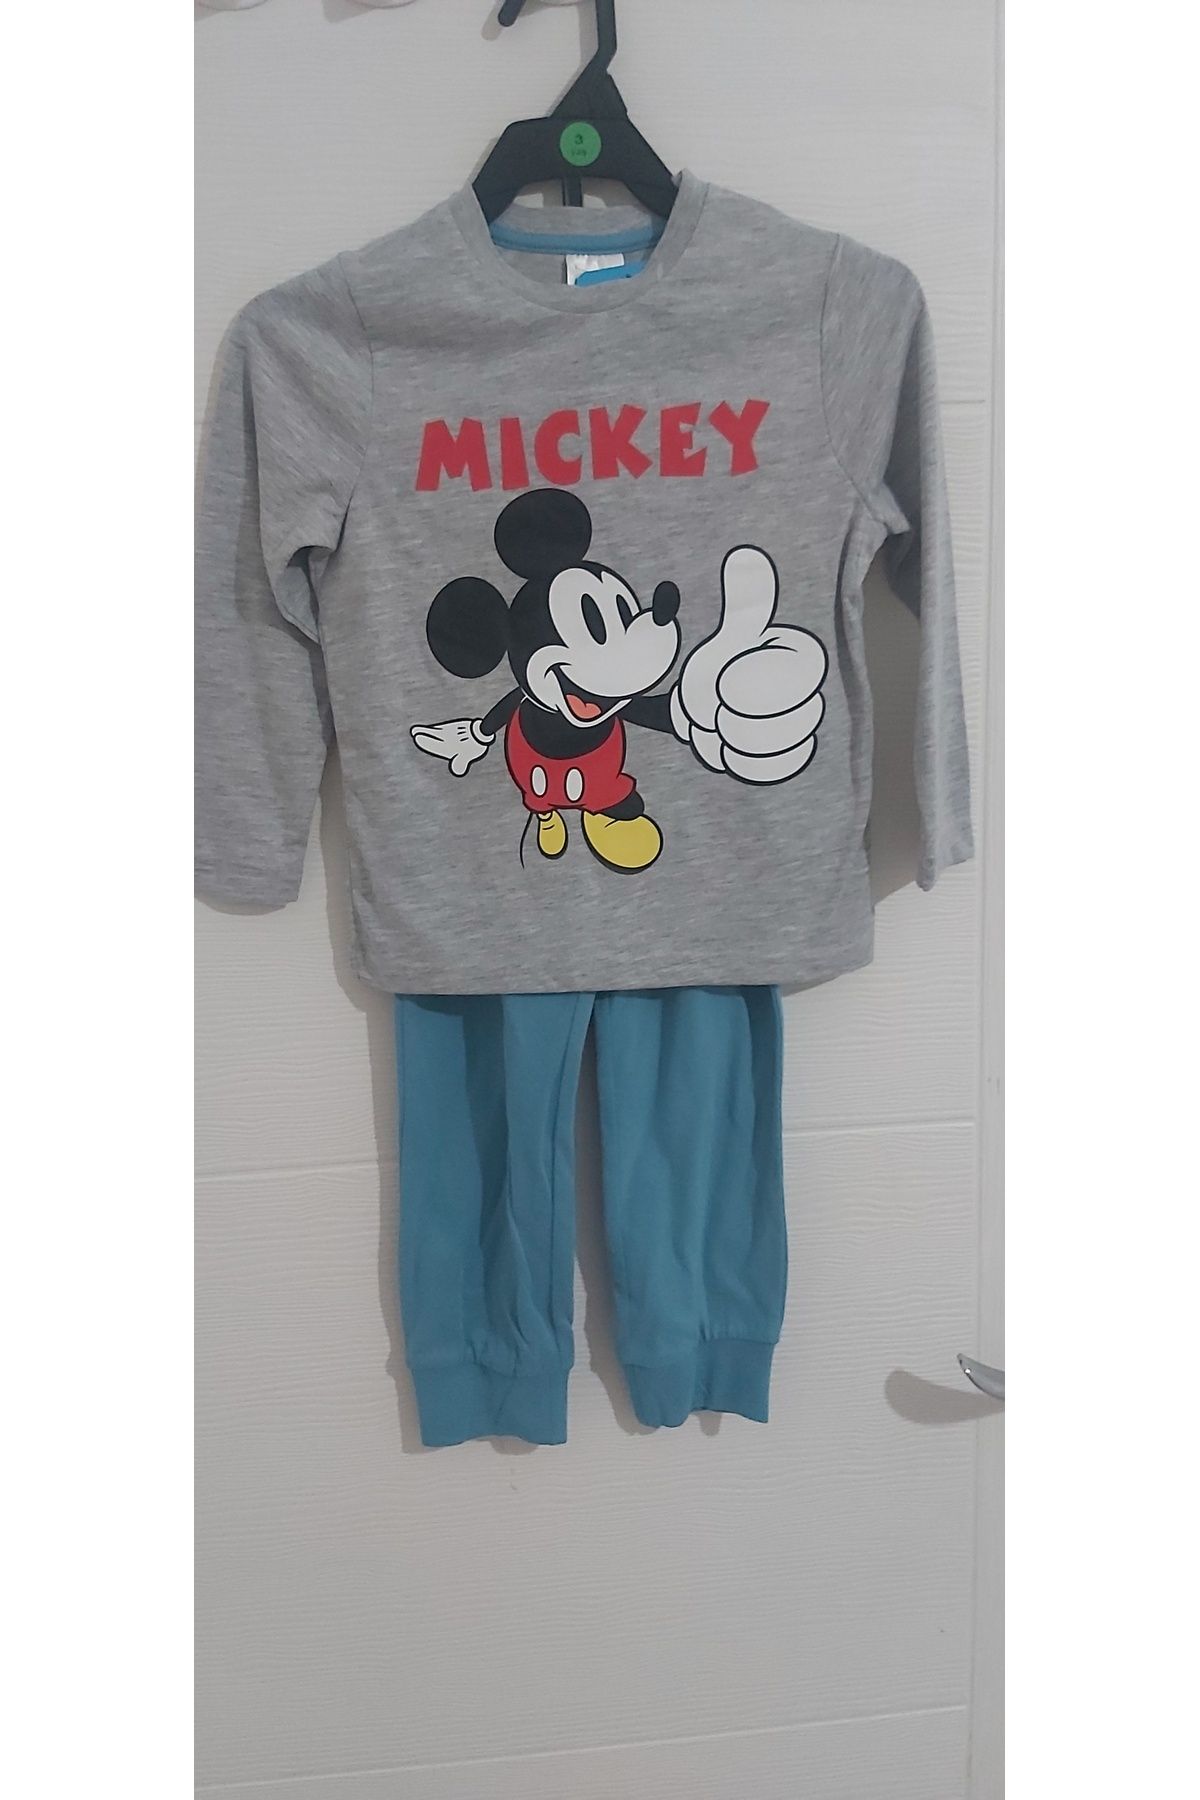 DİSNEY Mickey mouse Disney friends pijama takımı